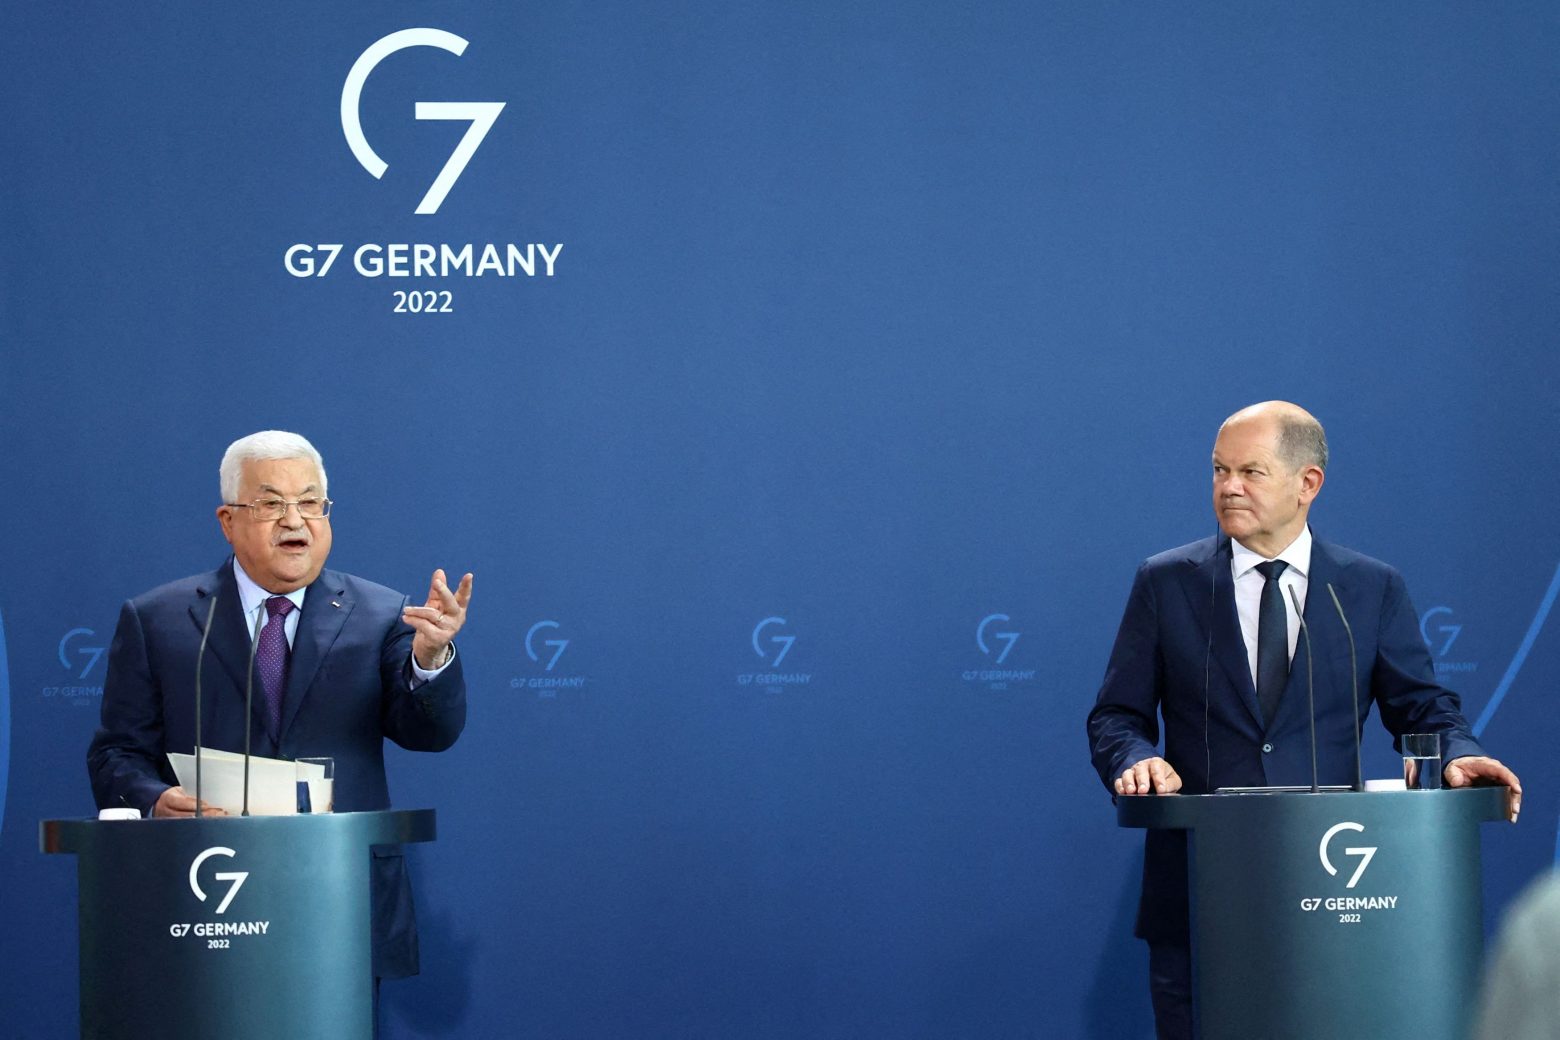 Γερμανία: Ερευνα σε βάρος του παλαιστίνιου προέδρου Αμπάς για «υποκίνηση μίσους» μετά τις δηλώσεις για το Ολοκαύτωμα